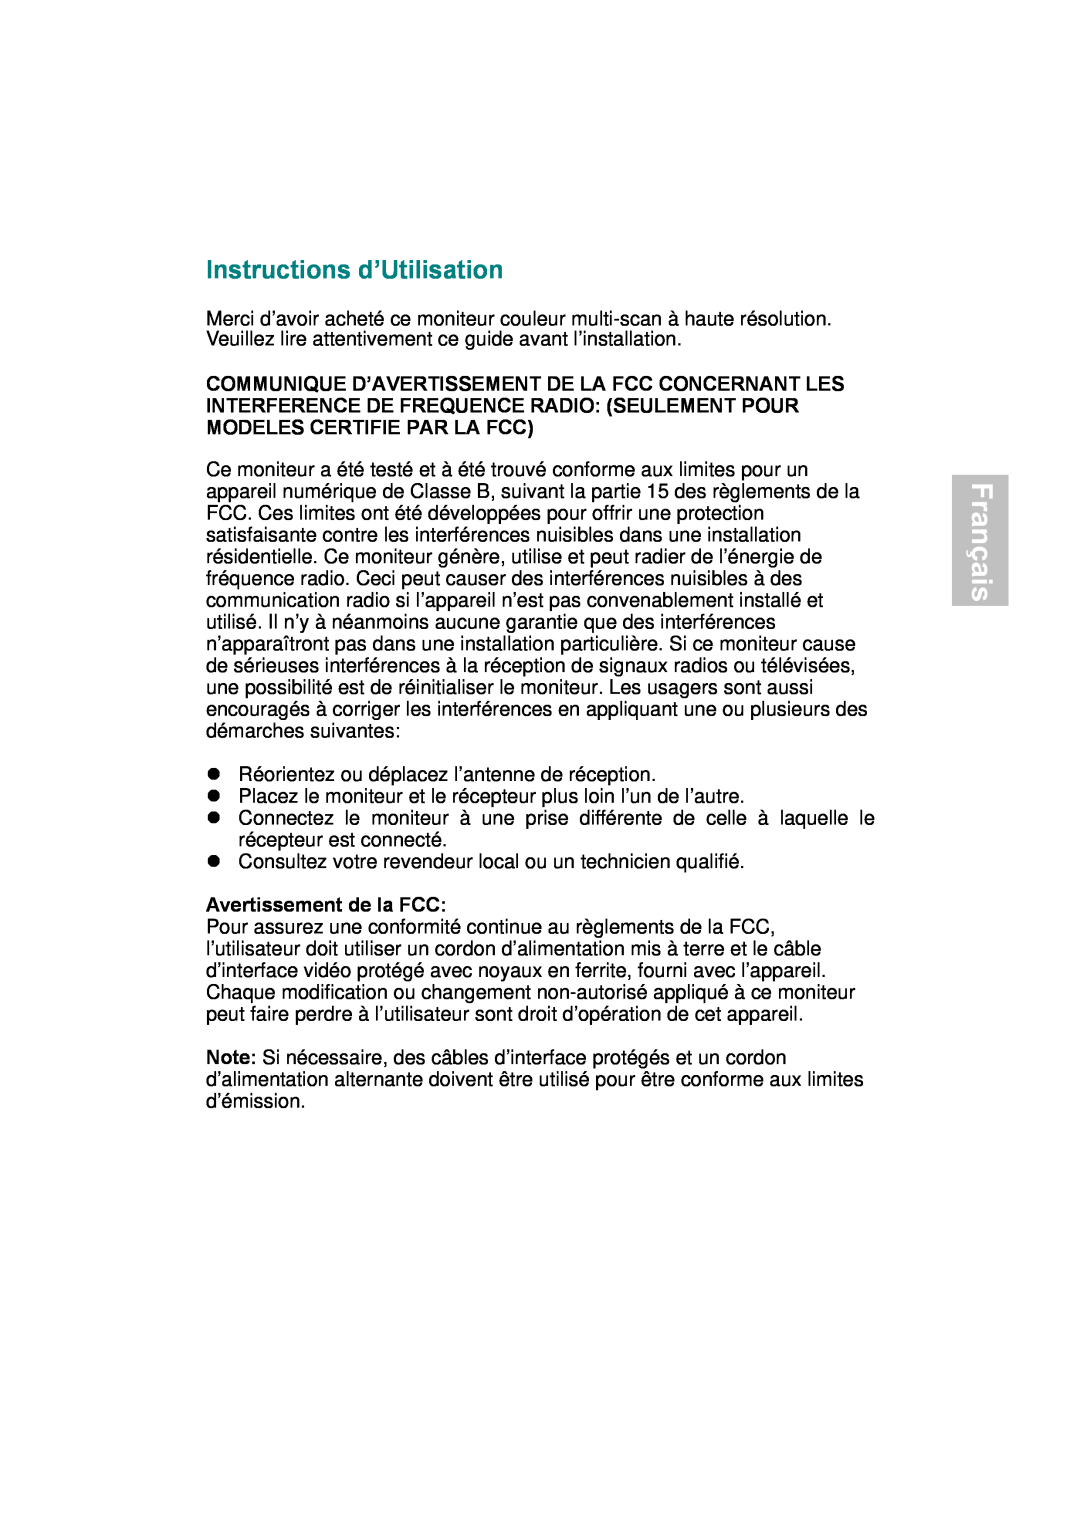 AOC 177Sa-1 manual Français, Instructions d’Utilisation, Avertissement de la FCC 